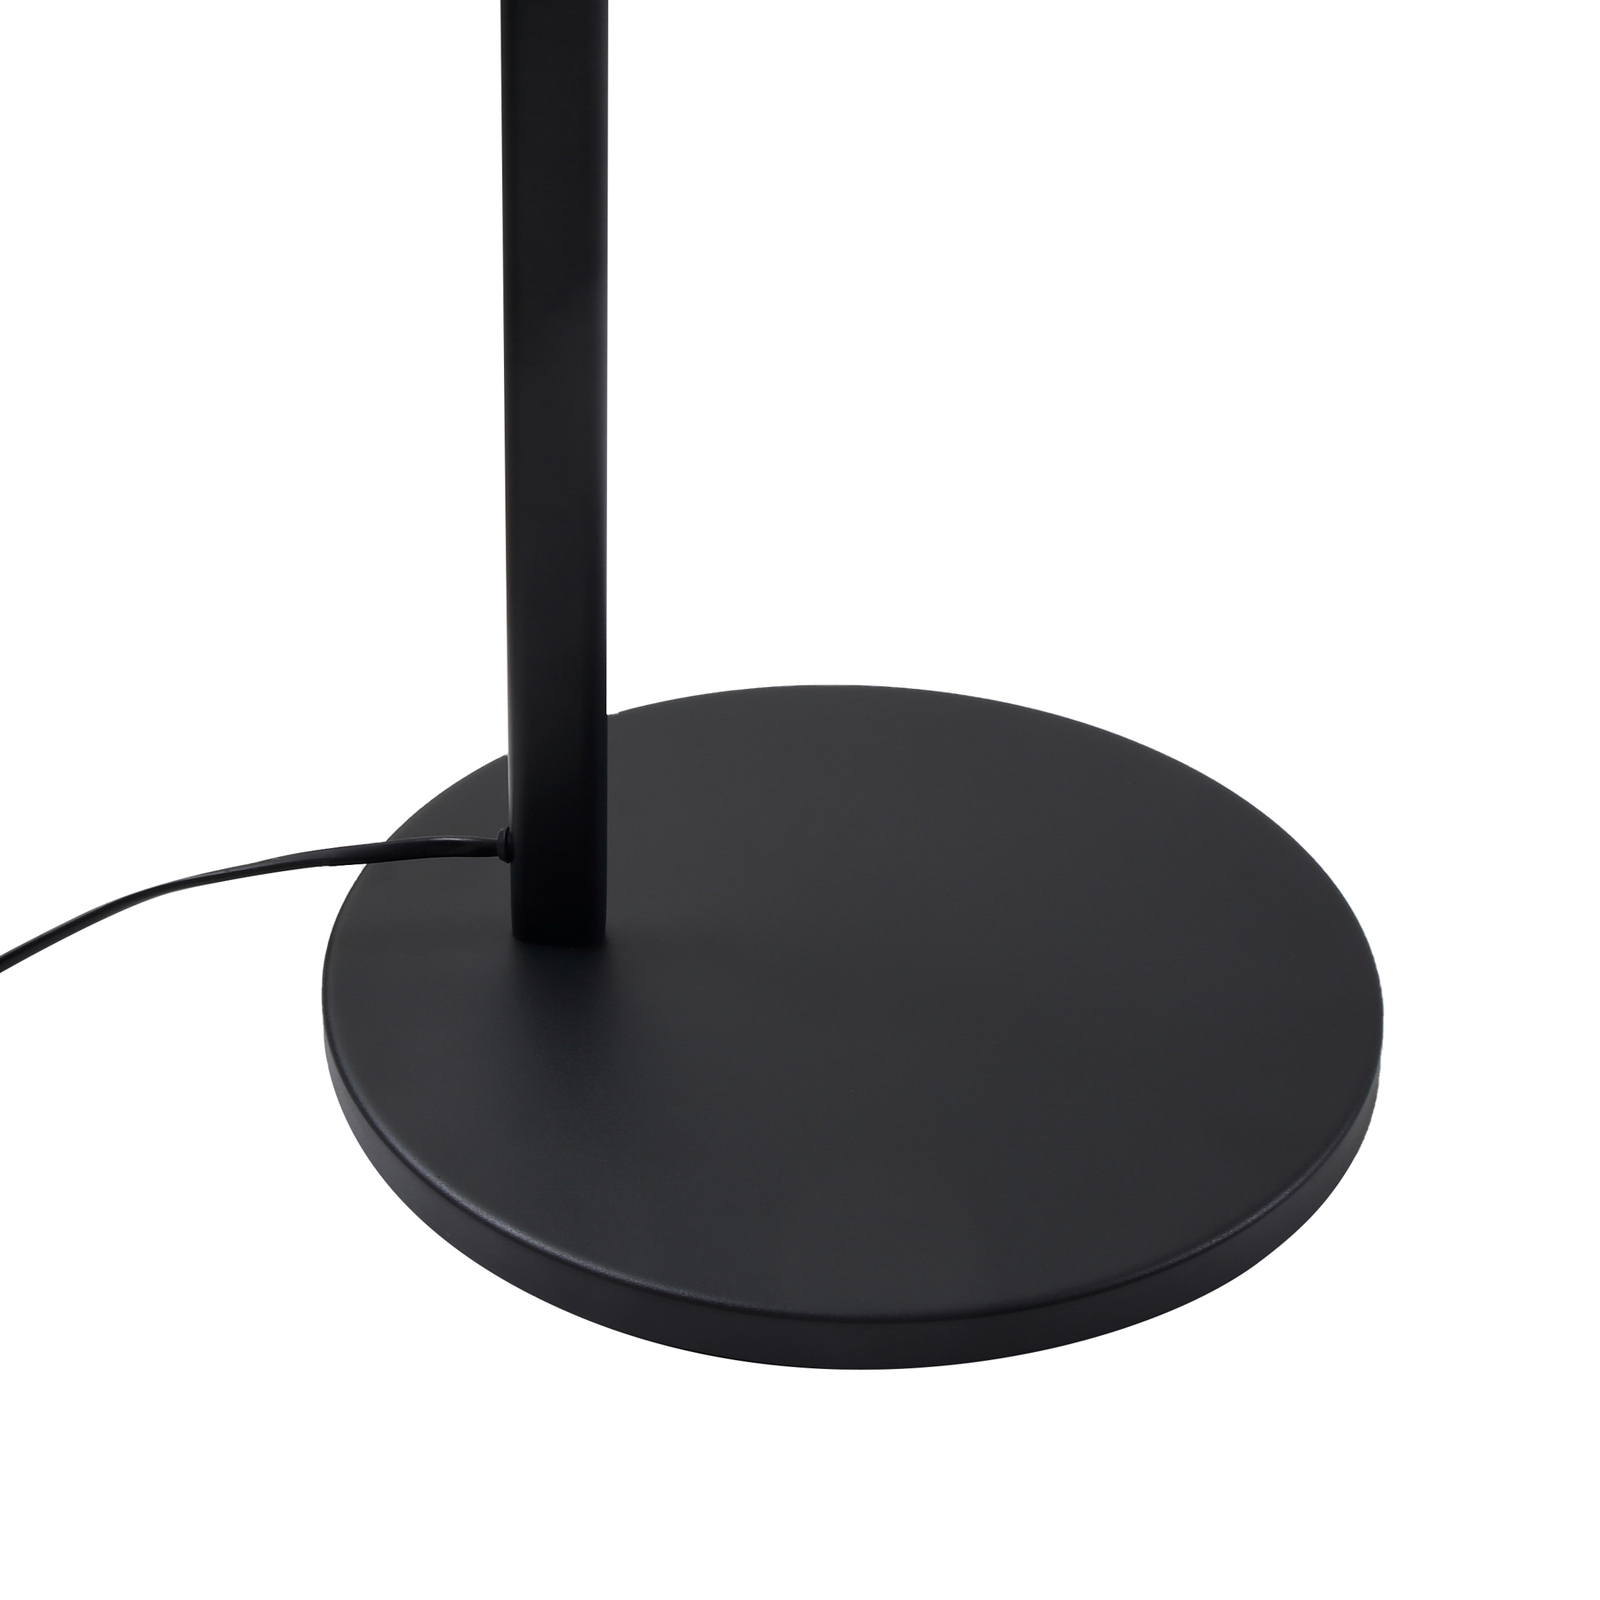 Lucande Silka floor lamp, height 216 cm, black, metal